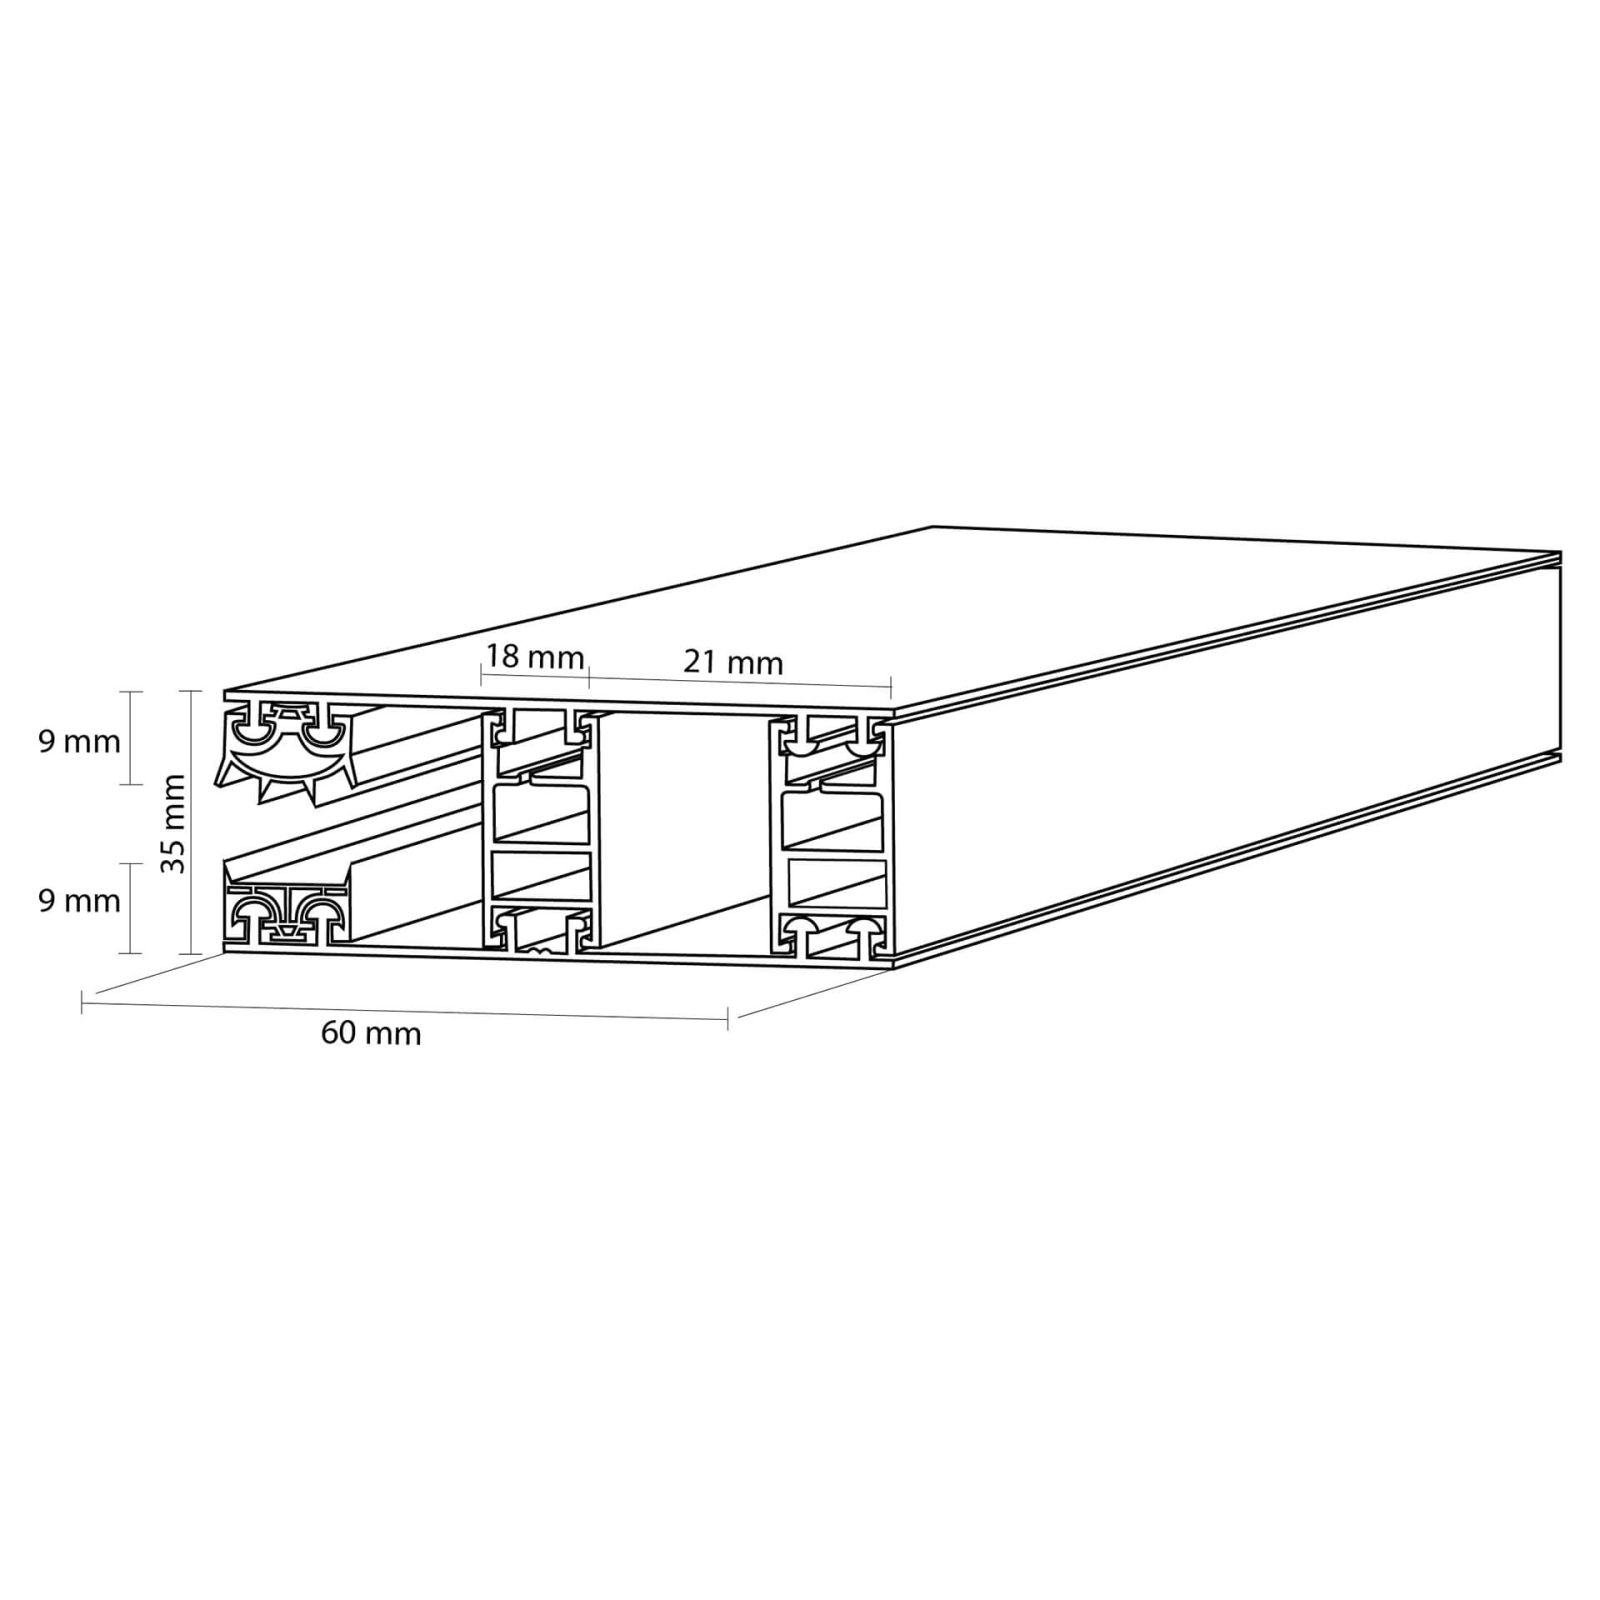 Polycarbonat Stegplatte | 16 mm | Profil Mendiger | Sparpaket | Plattenbreite 1200 mm | Klar | Extra stark | Breite 3,75 m | Länge 2,00 m #9